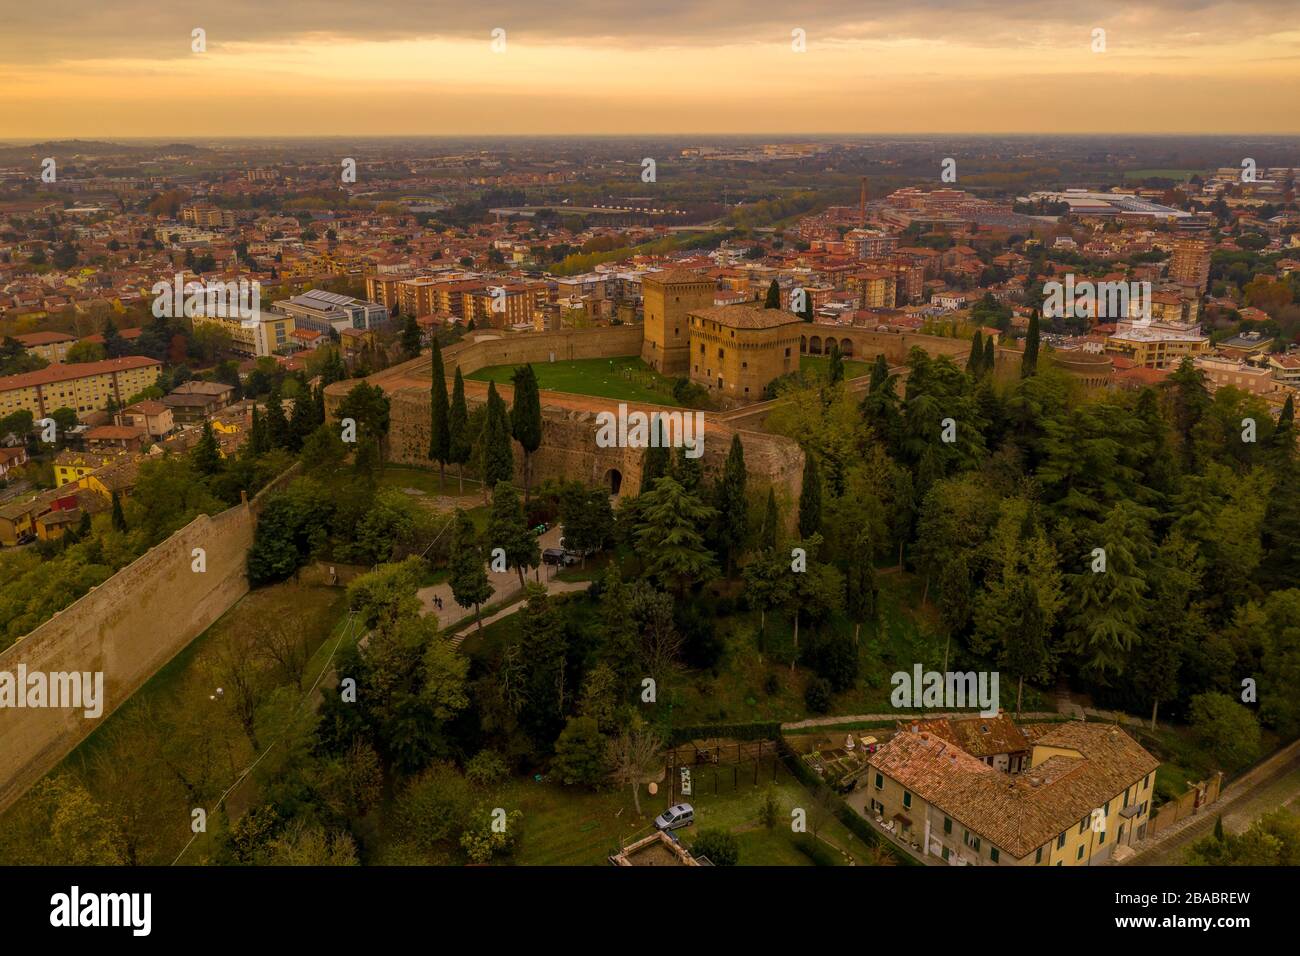 Coucher de soleil panorama aérien de Cesena en Emilie Romagne Italie près de Forli et Rimini, avec le château médiéval de Malatestiana, la Piazza del Popolo et le chat romain Banque D'Images